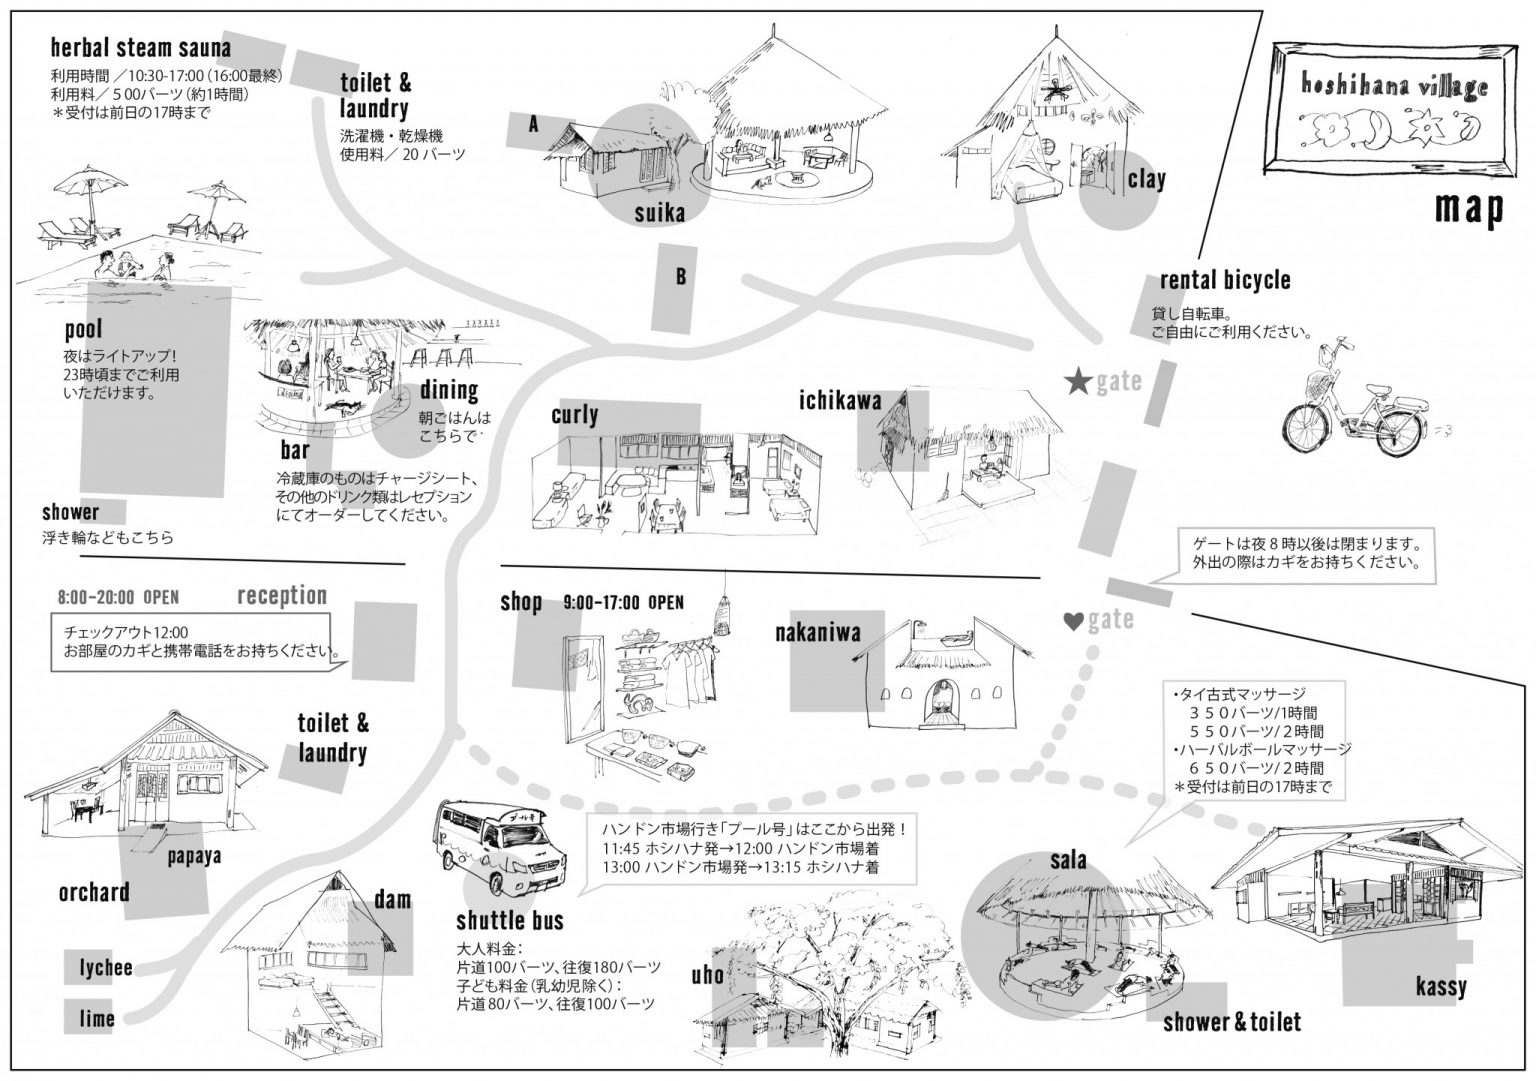 1.hoshihana map